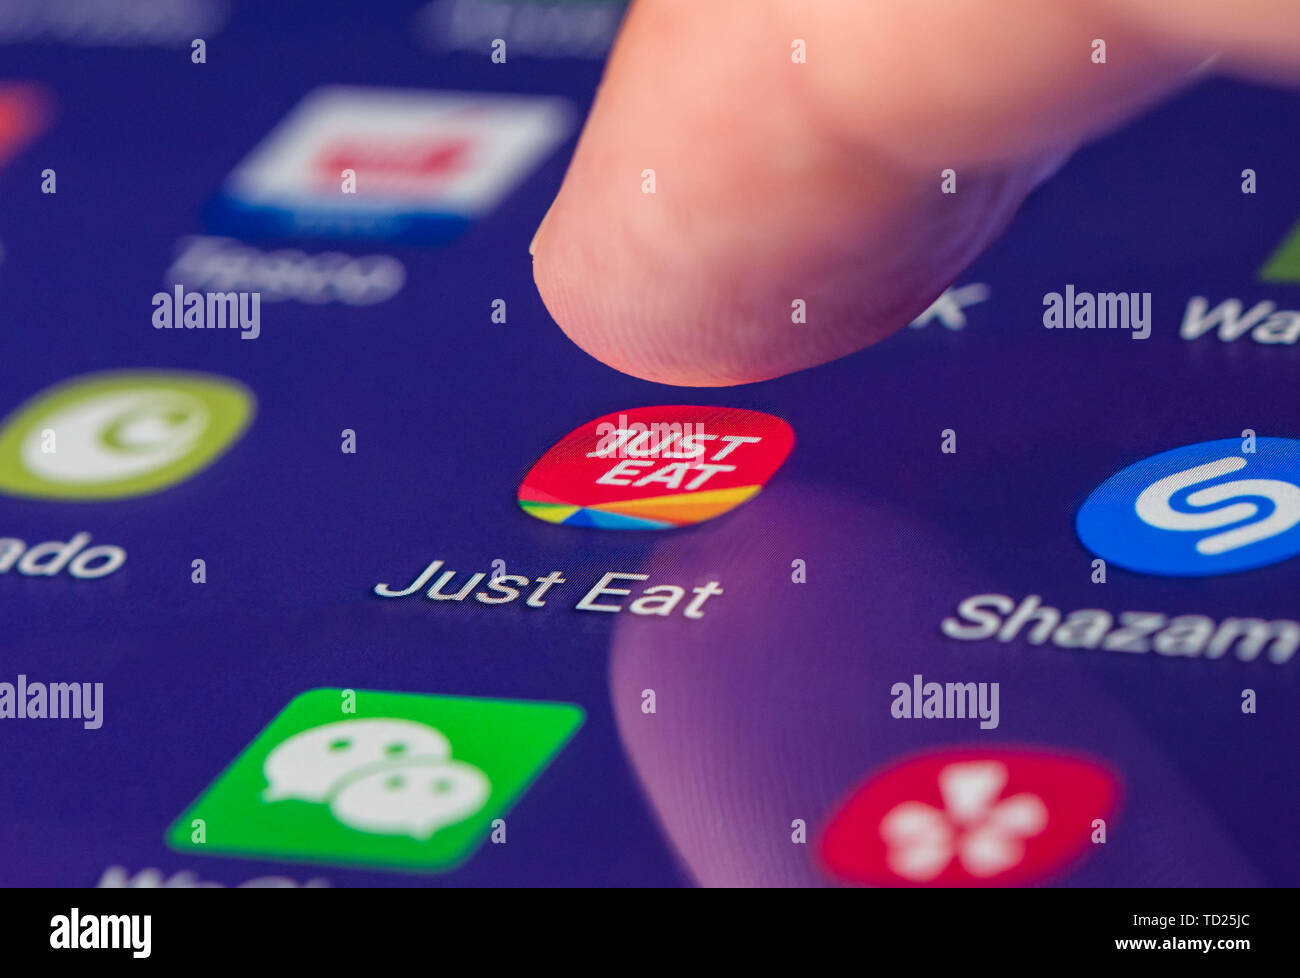 Le doigt qui appuie sur l'icône app manger juste sur un écran tactile d'une tablette ou smartphone appareil mobile, pour commander en ligne d'aliments de préparation rapide. Banque D'Images